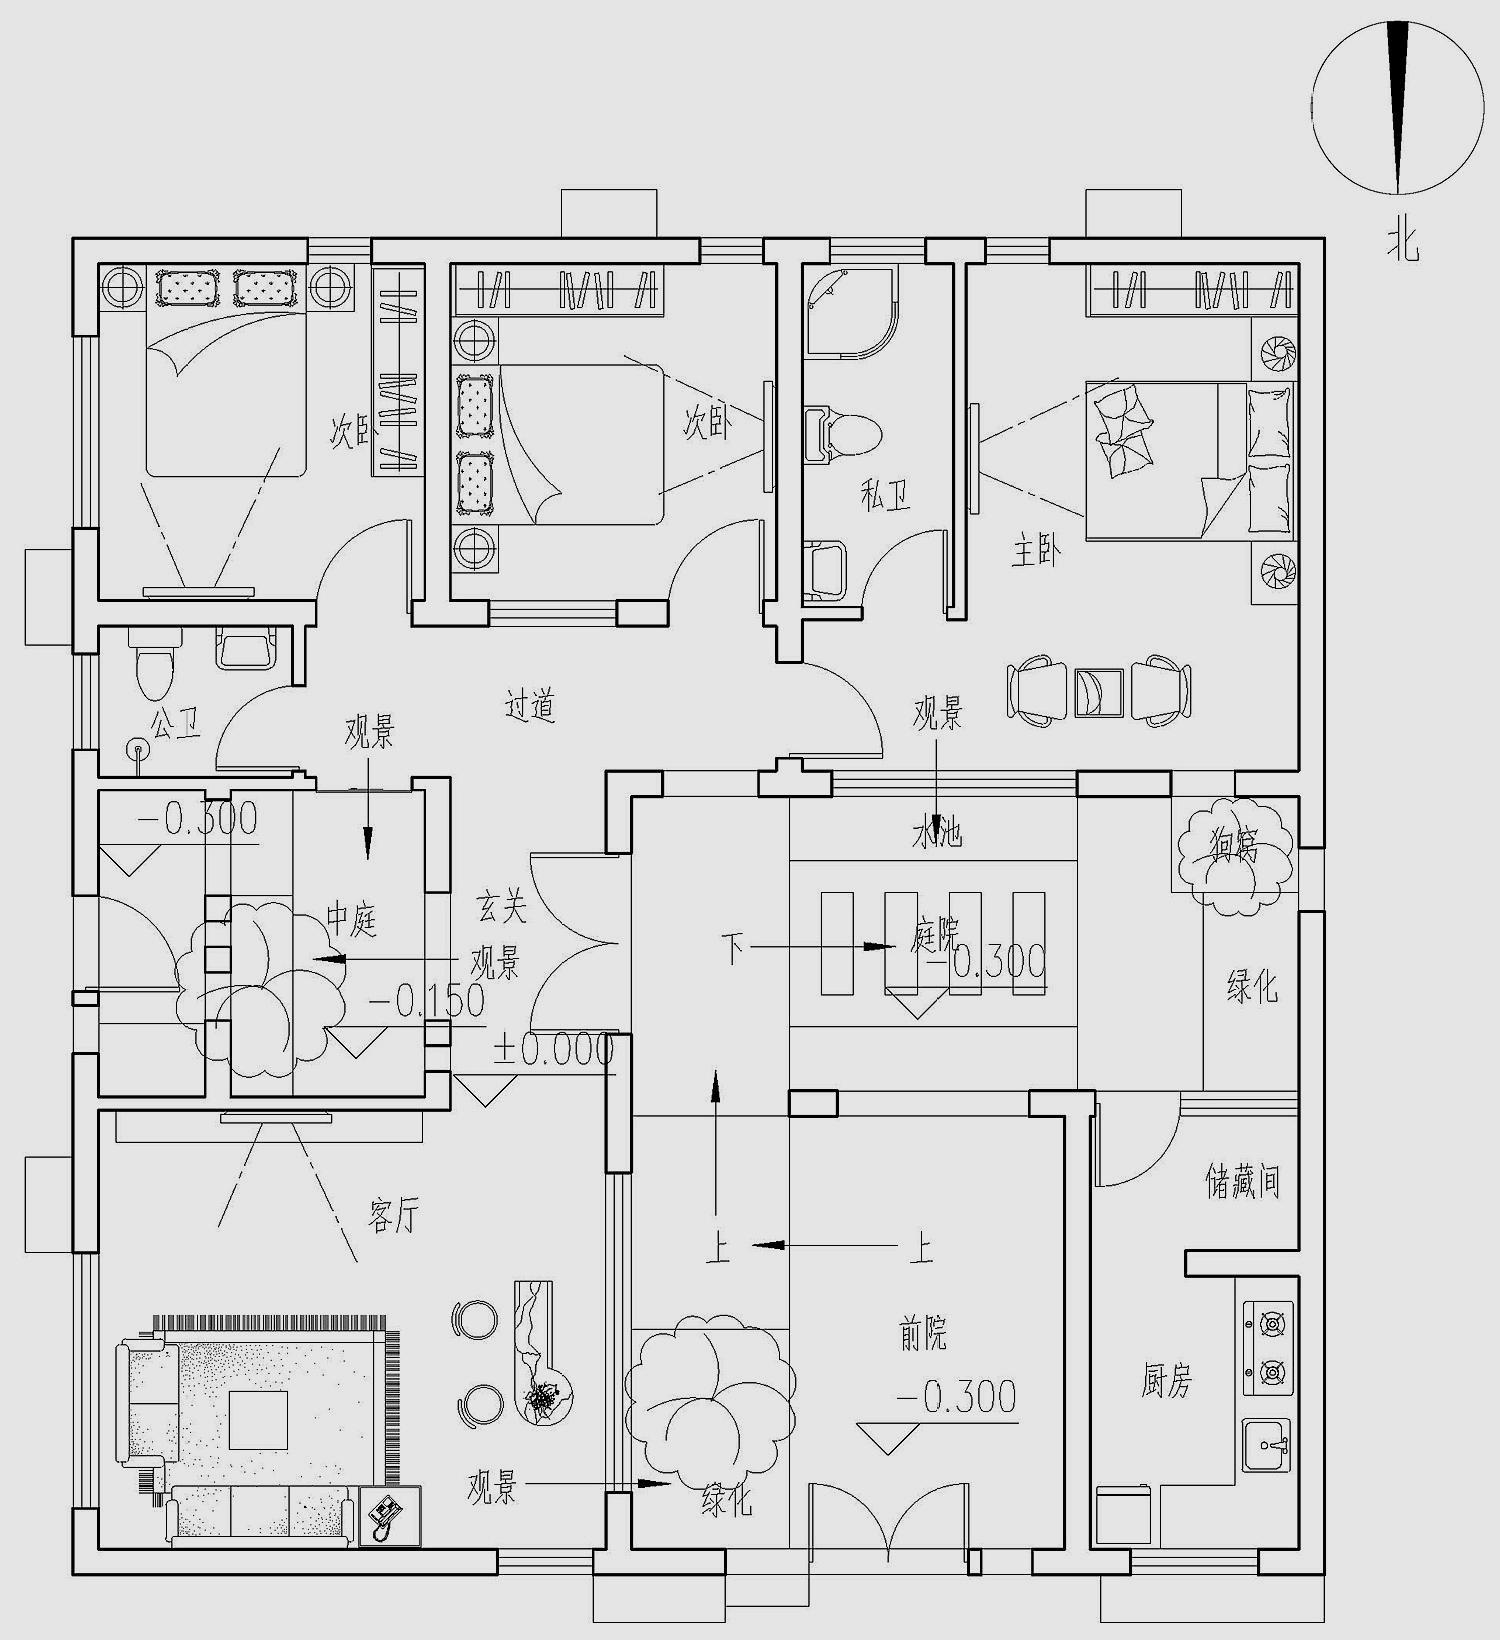 一层平面设计图:厨房,客厅,餐厅, 卧室,娱乐室